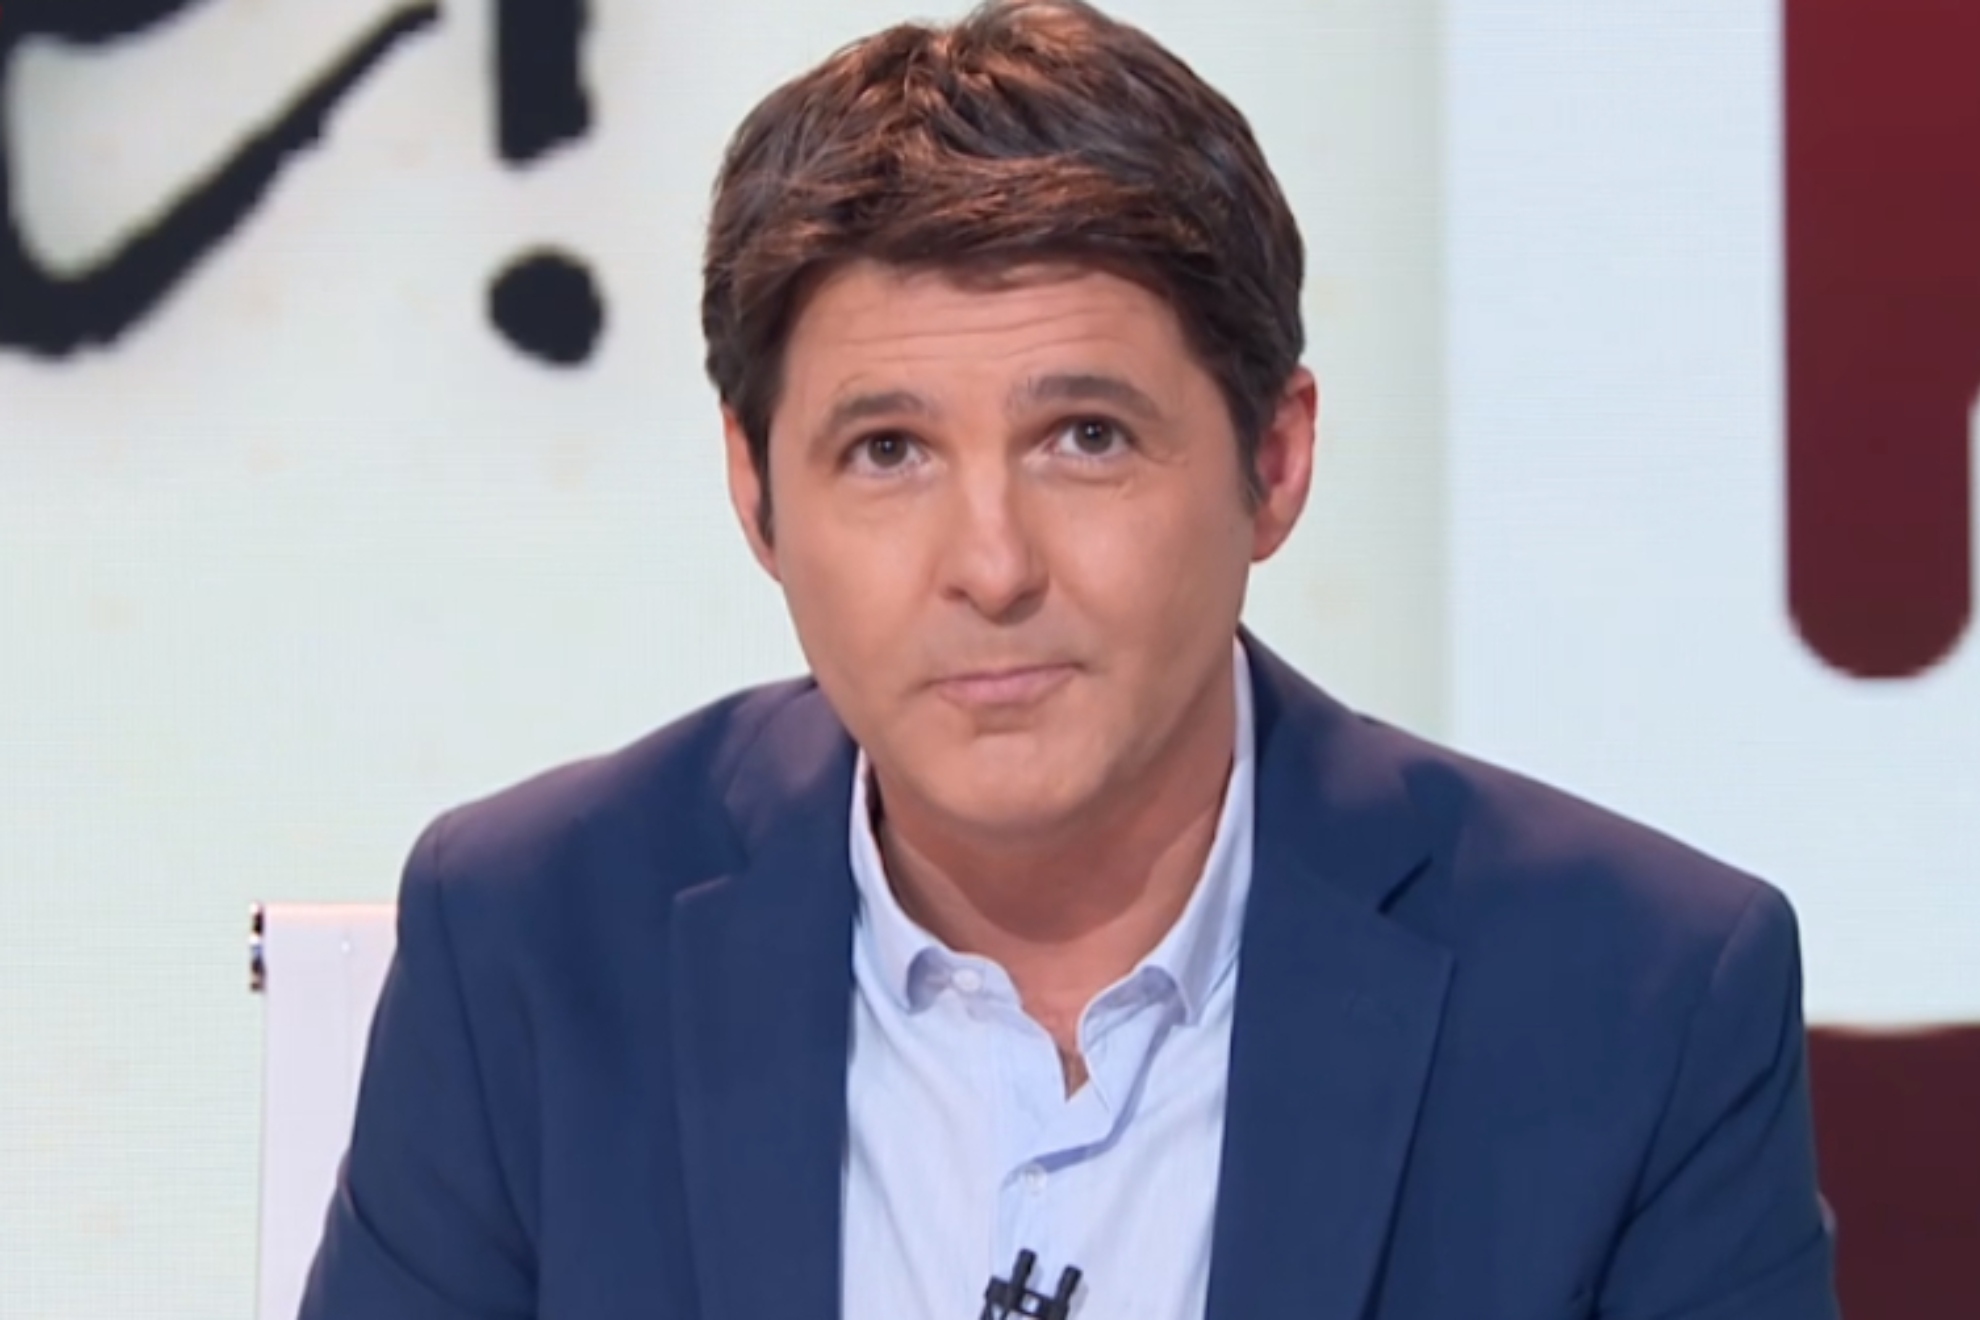 Jess Cintora vuelve a Mediaset para 'La mirada crtica' en Telecinco: por qu fue despedido hace aos?